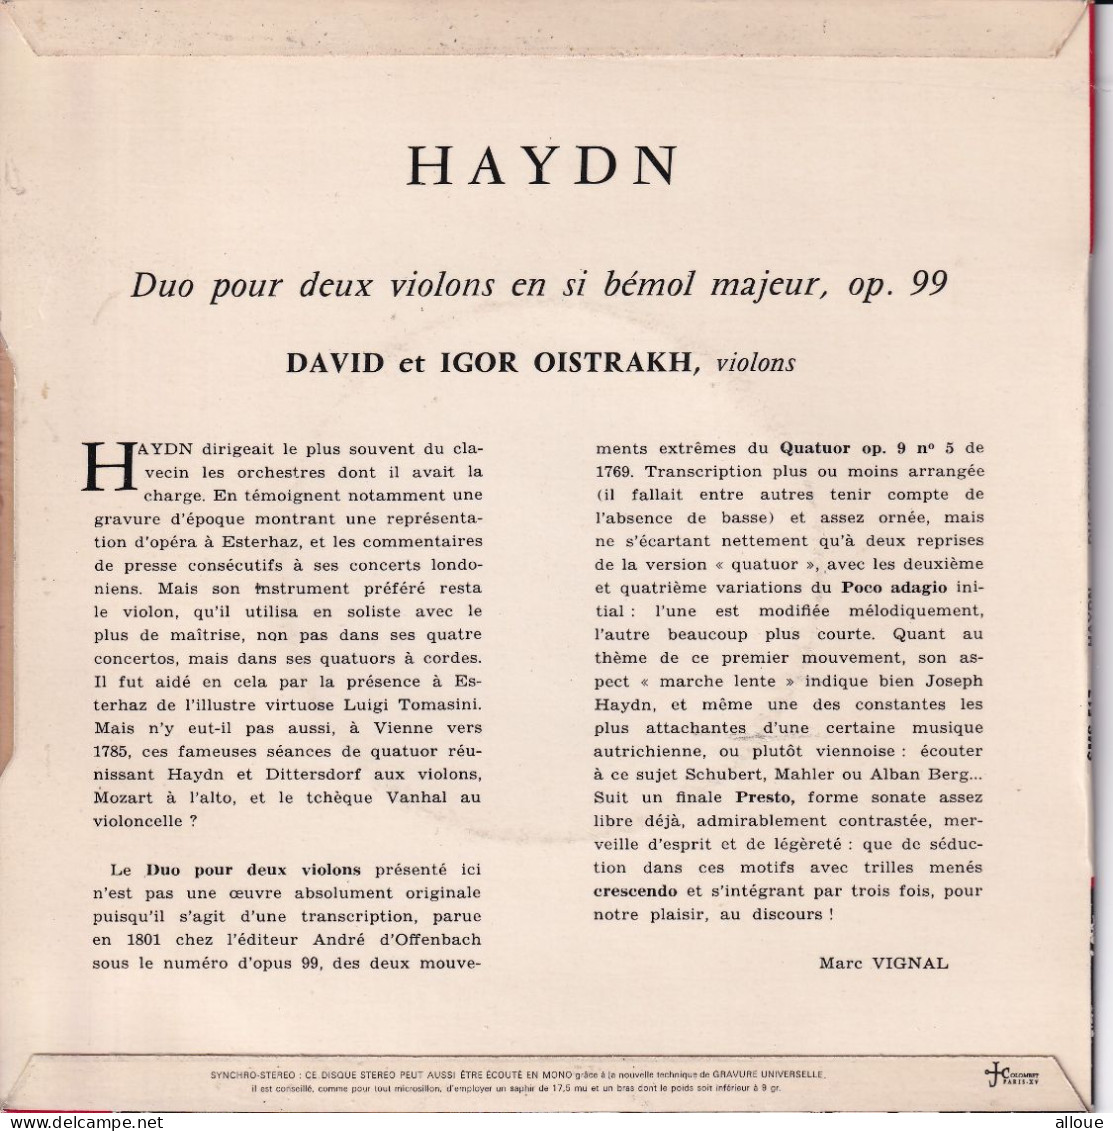 DAVID & IGOR OISTRAKH JOUENT HAYDN - FR EP - DUO POUR DEUX VIOLONS EN SI BEMOL MAJEUR, OP. 99 - Classica